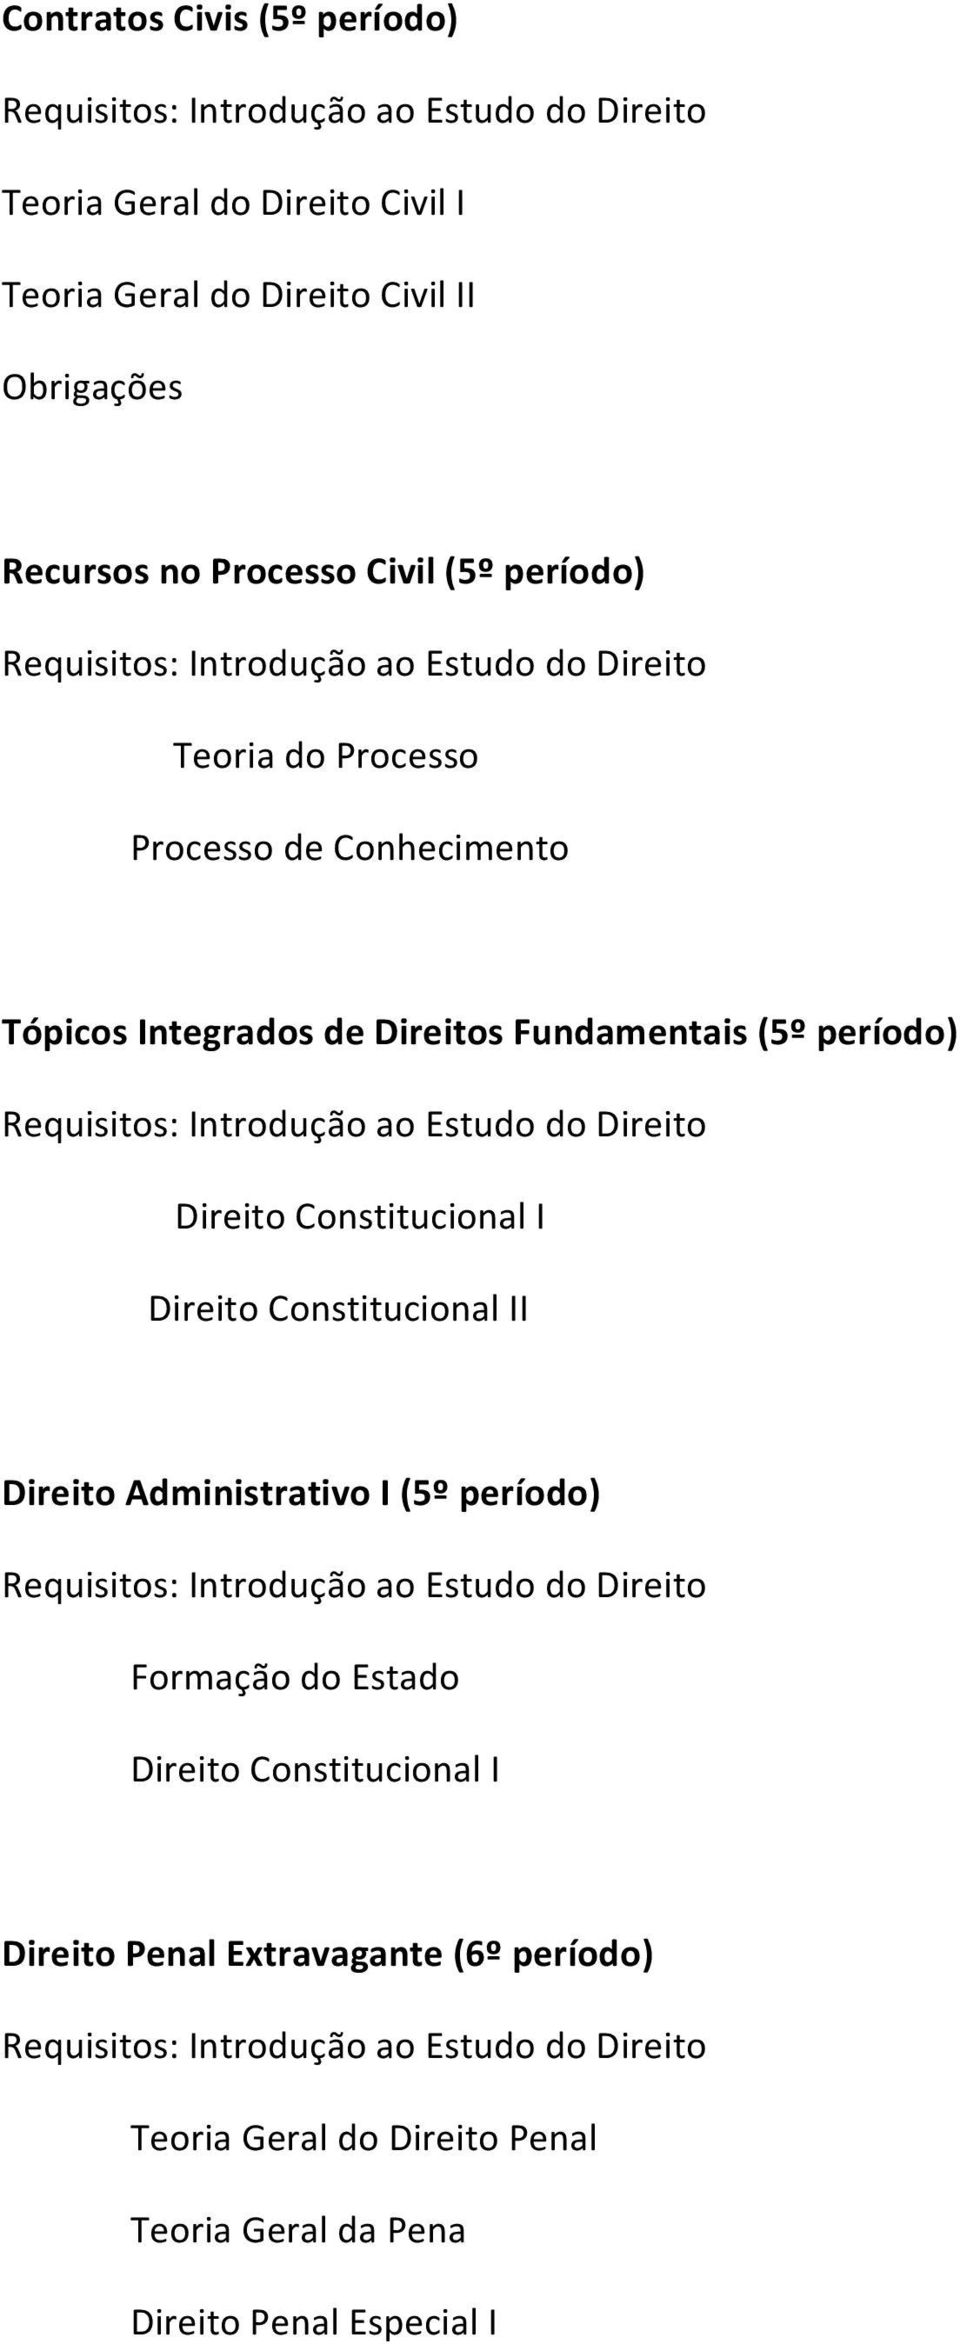 TópicosIntegradosdeDireitosFundamentais(5ºperíodo) Requisitos:IntroduçãoaoEstudodoDireito DireitoConstitucionalI DireitoConstitucionalII